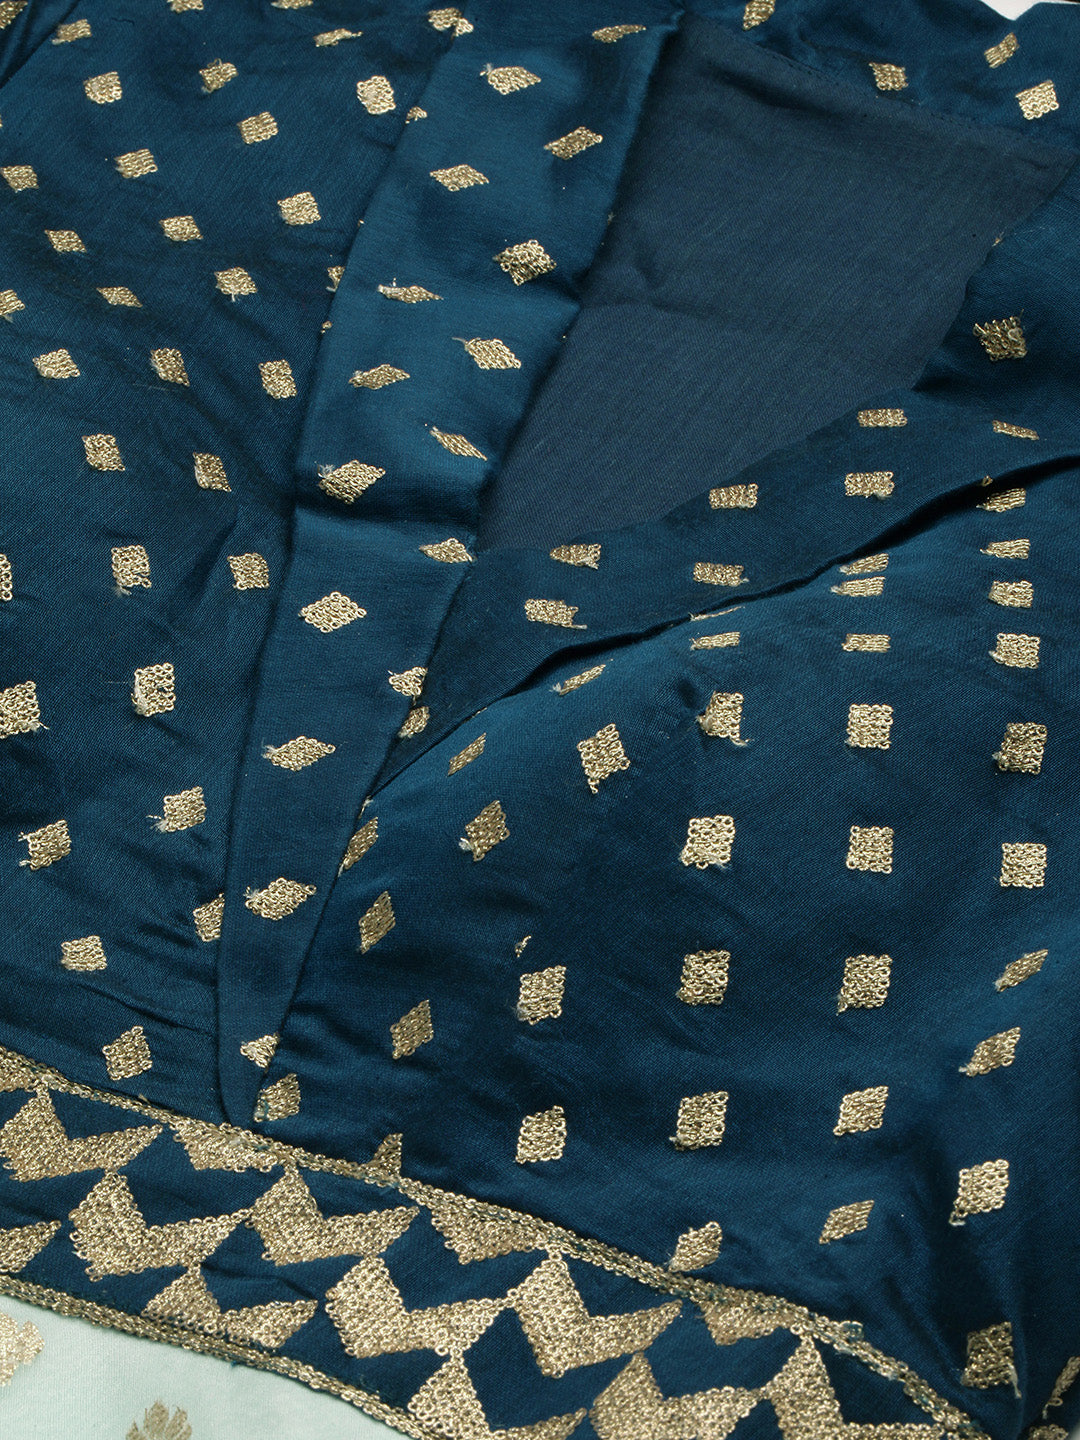 Blue-Chanderi-Art-Silk-Gown